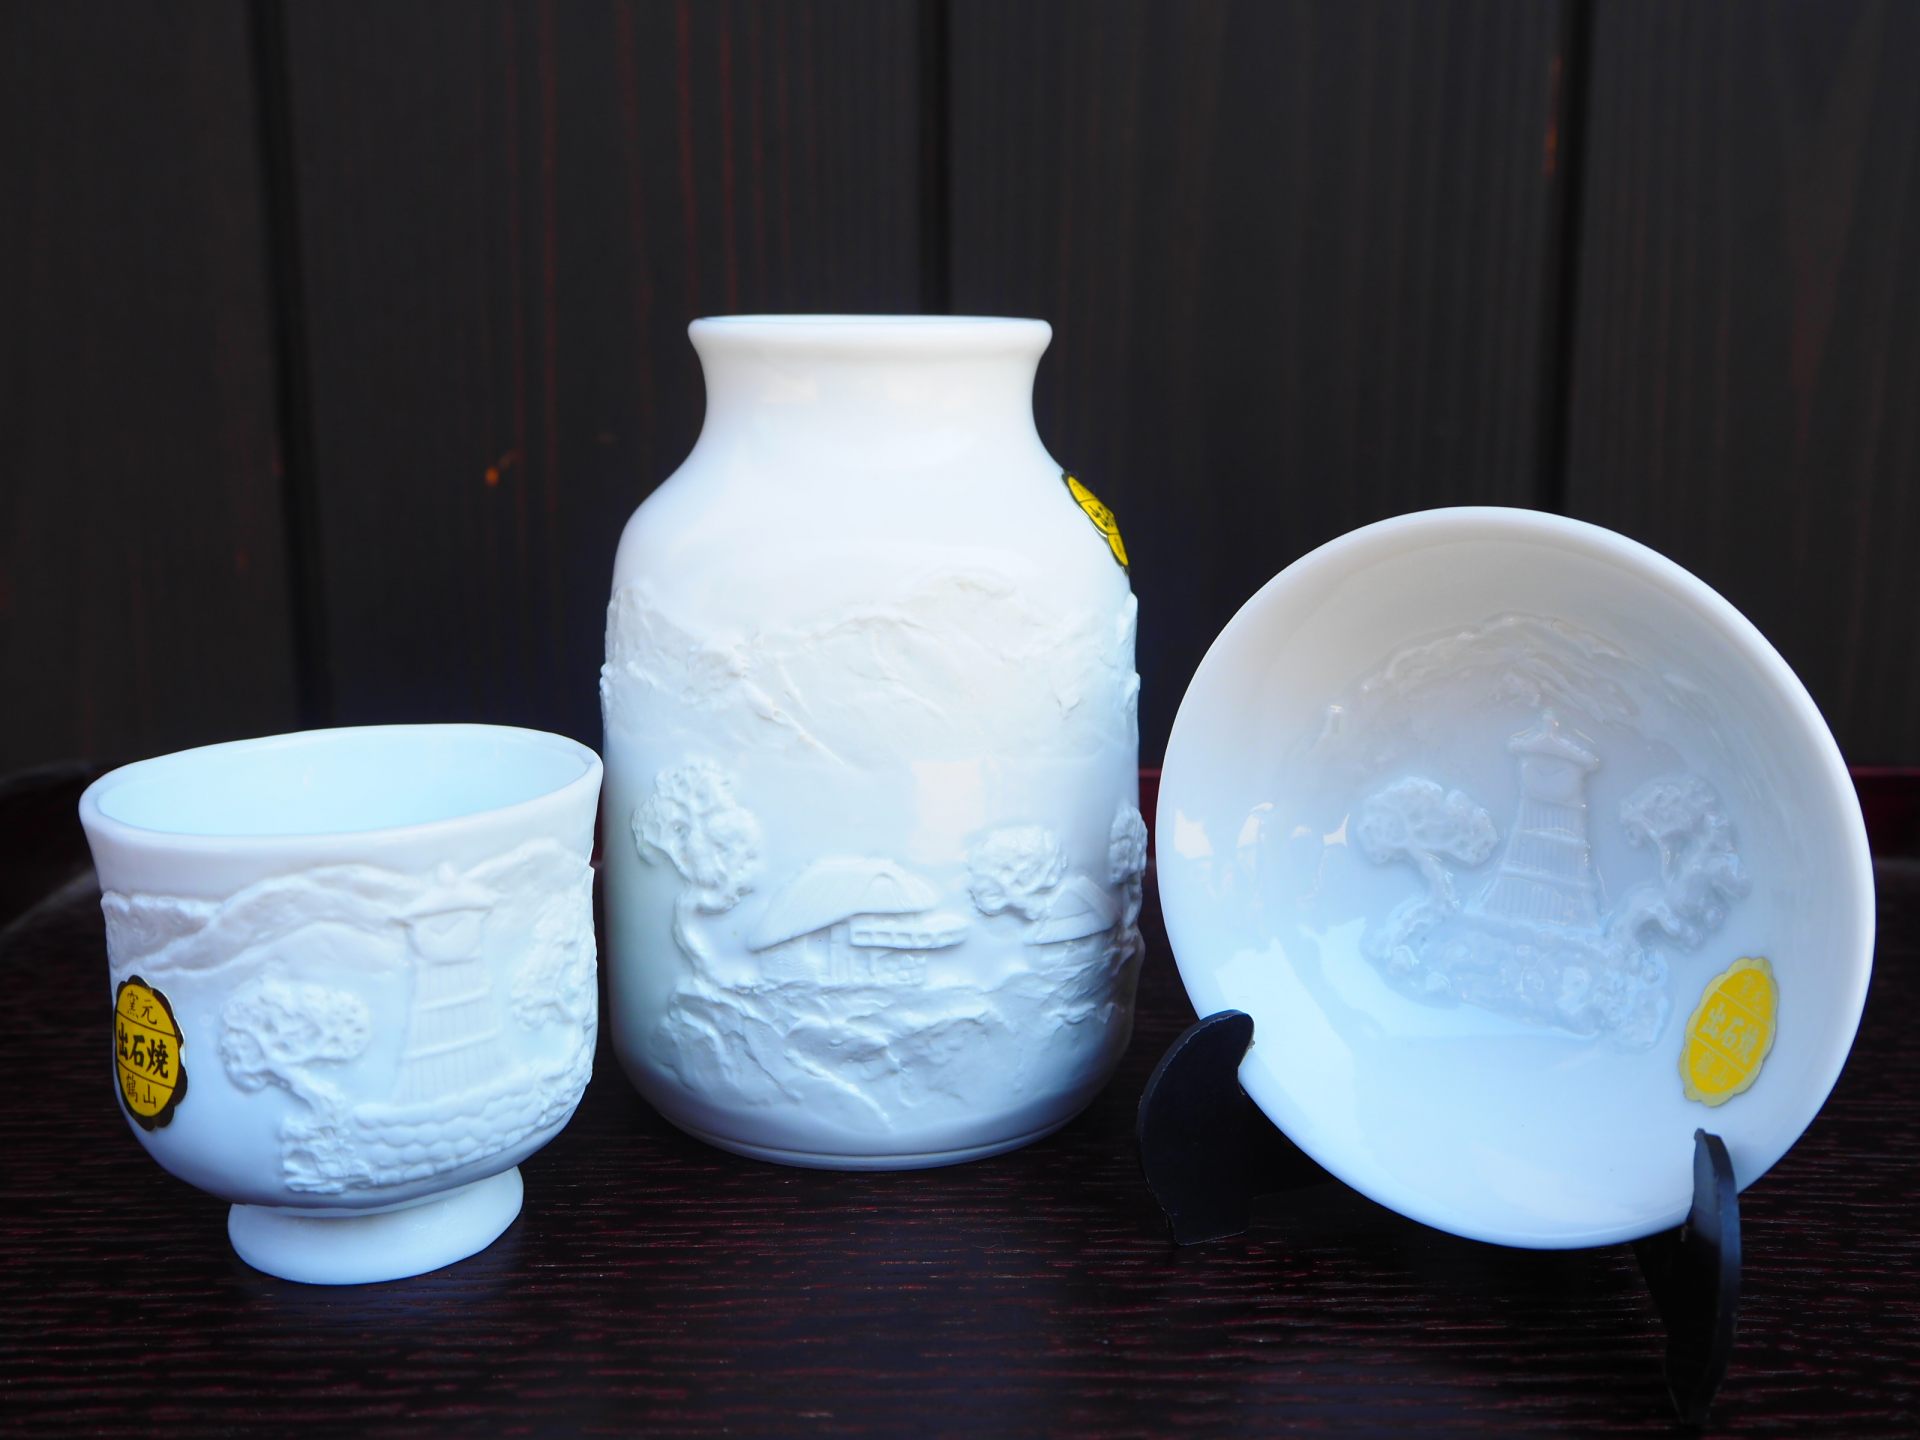 Recuerdo popular, Izushi yaki es una rara cerámica blanca con una superficie blanca y suave como la seda.